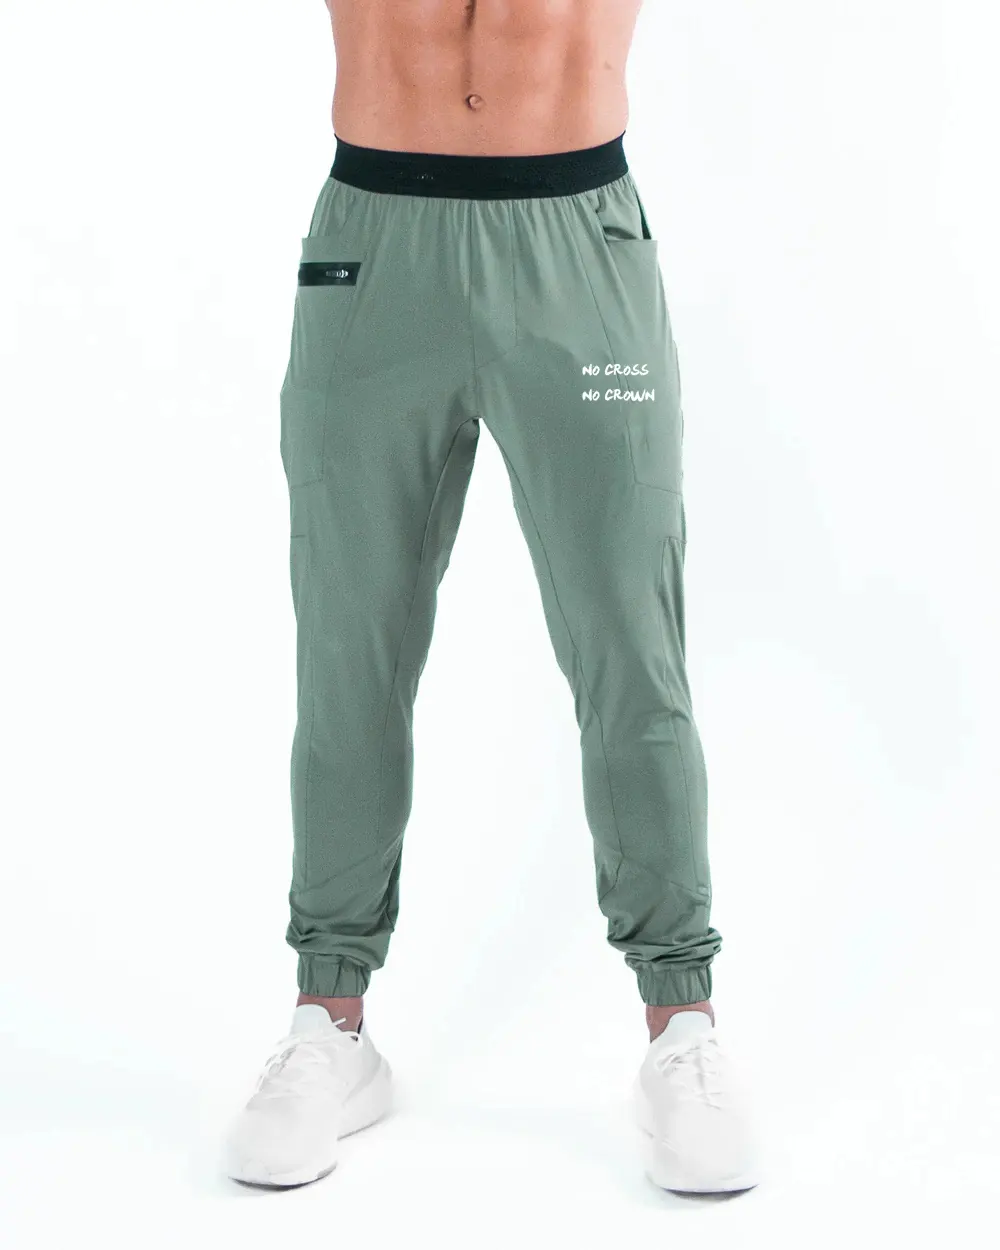 Atletik fitness giysileri erkek hafif kumaş joggers logo Joggers pantolon özelleştirmek